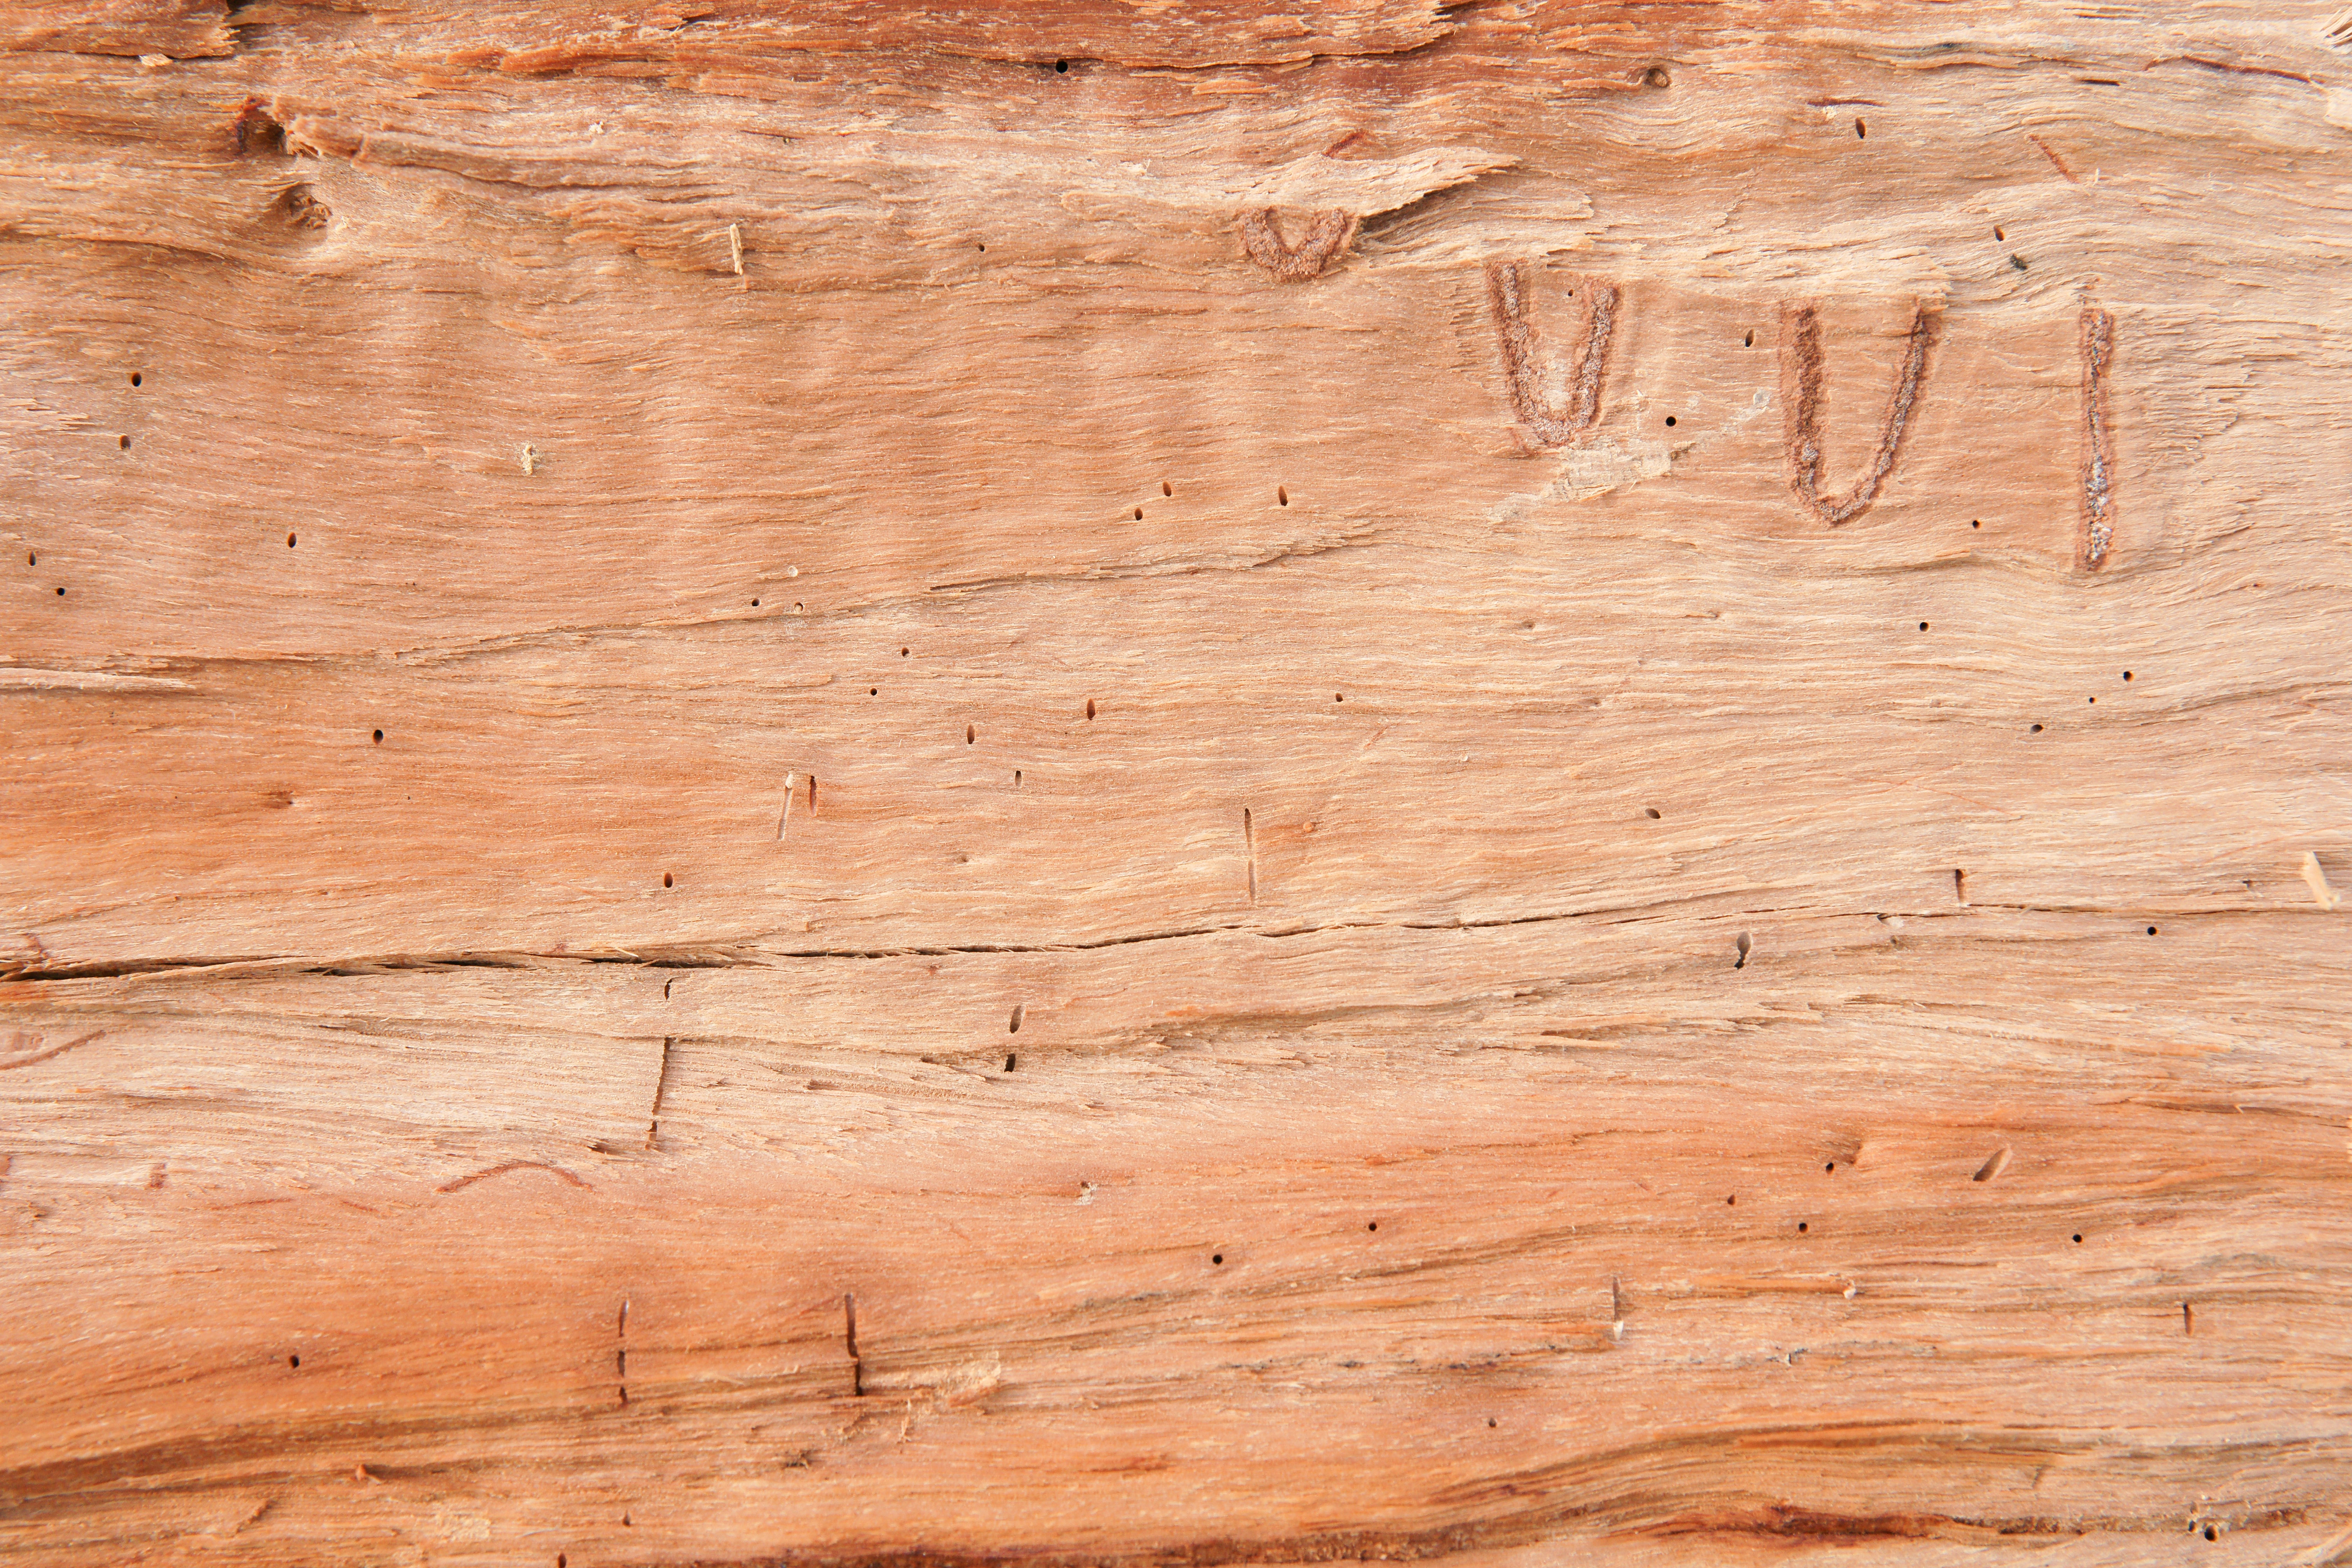 Wooden Log Texture 6048x4032